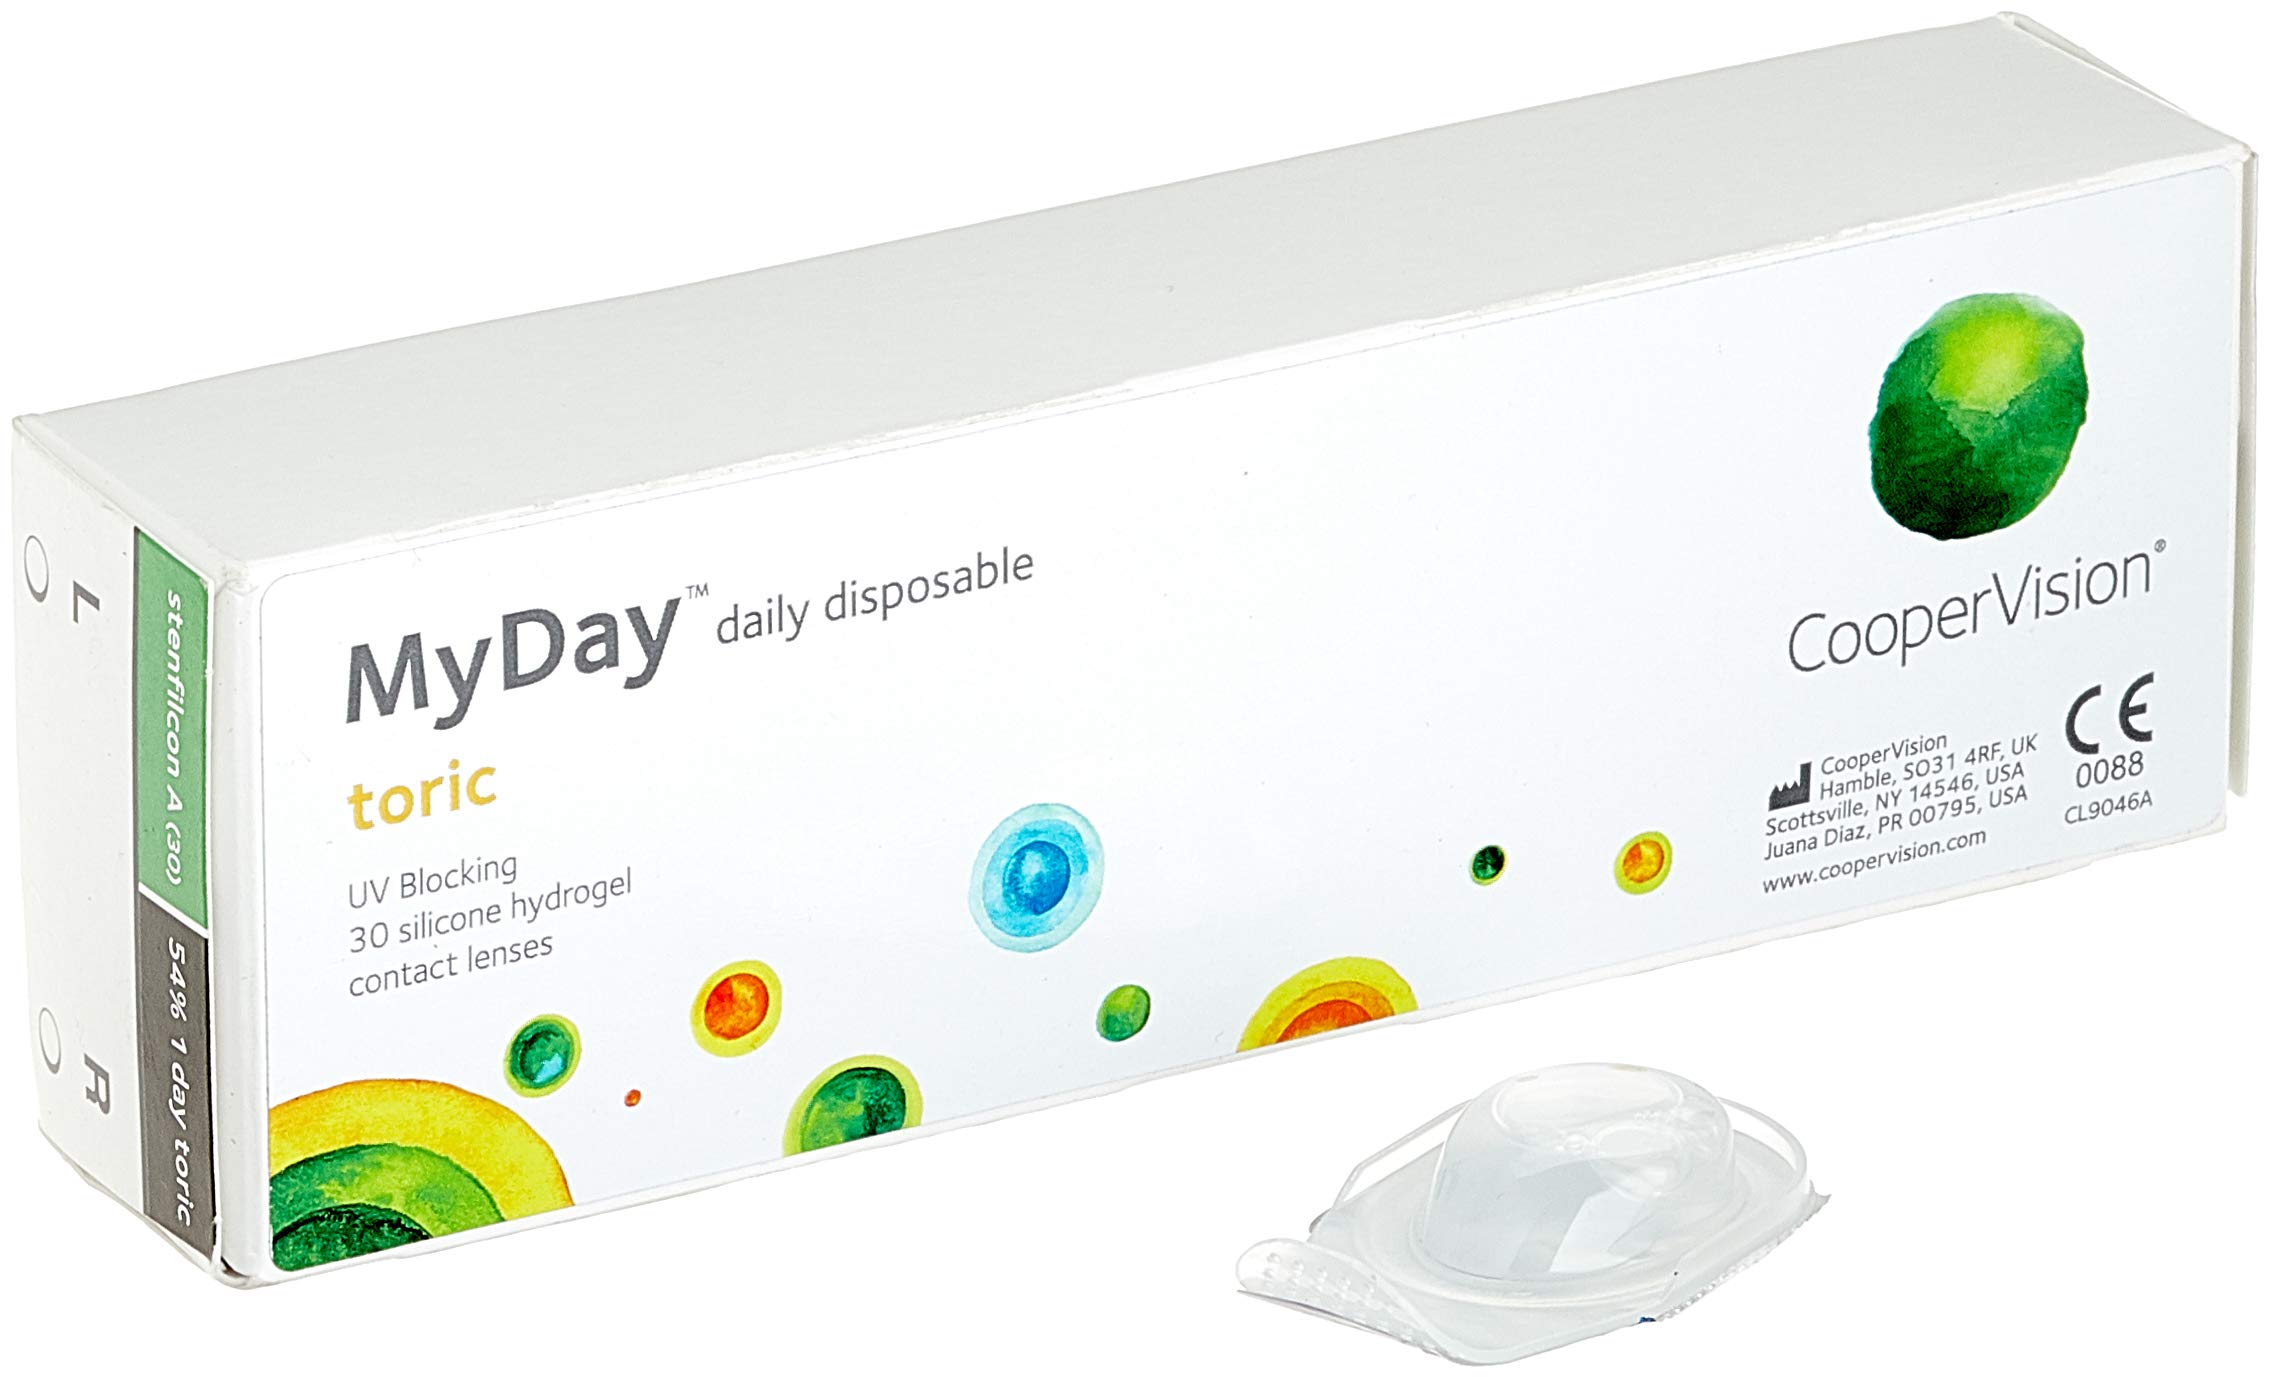 MYDAY Daily disposable Torisch Tageslinsen weich, 30 Stück / BC 8.6 mm / Dia 14.5 mm / CYL -0,75 / ACHSE 110 / -8 Dioptrien